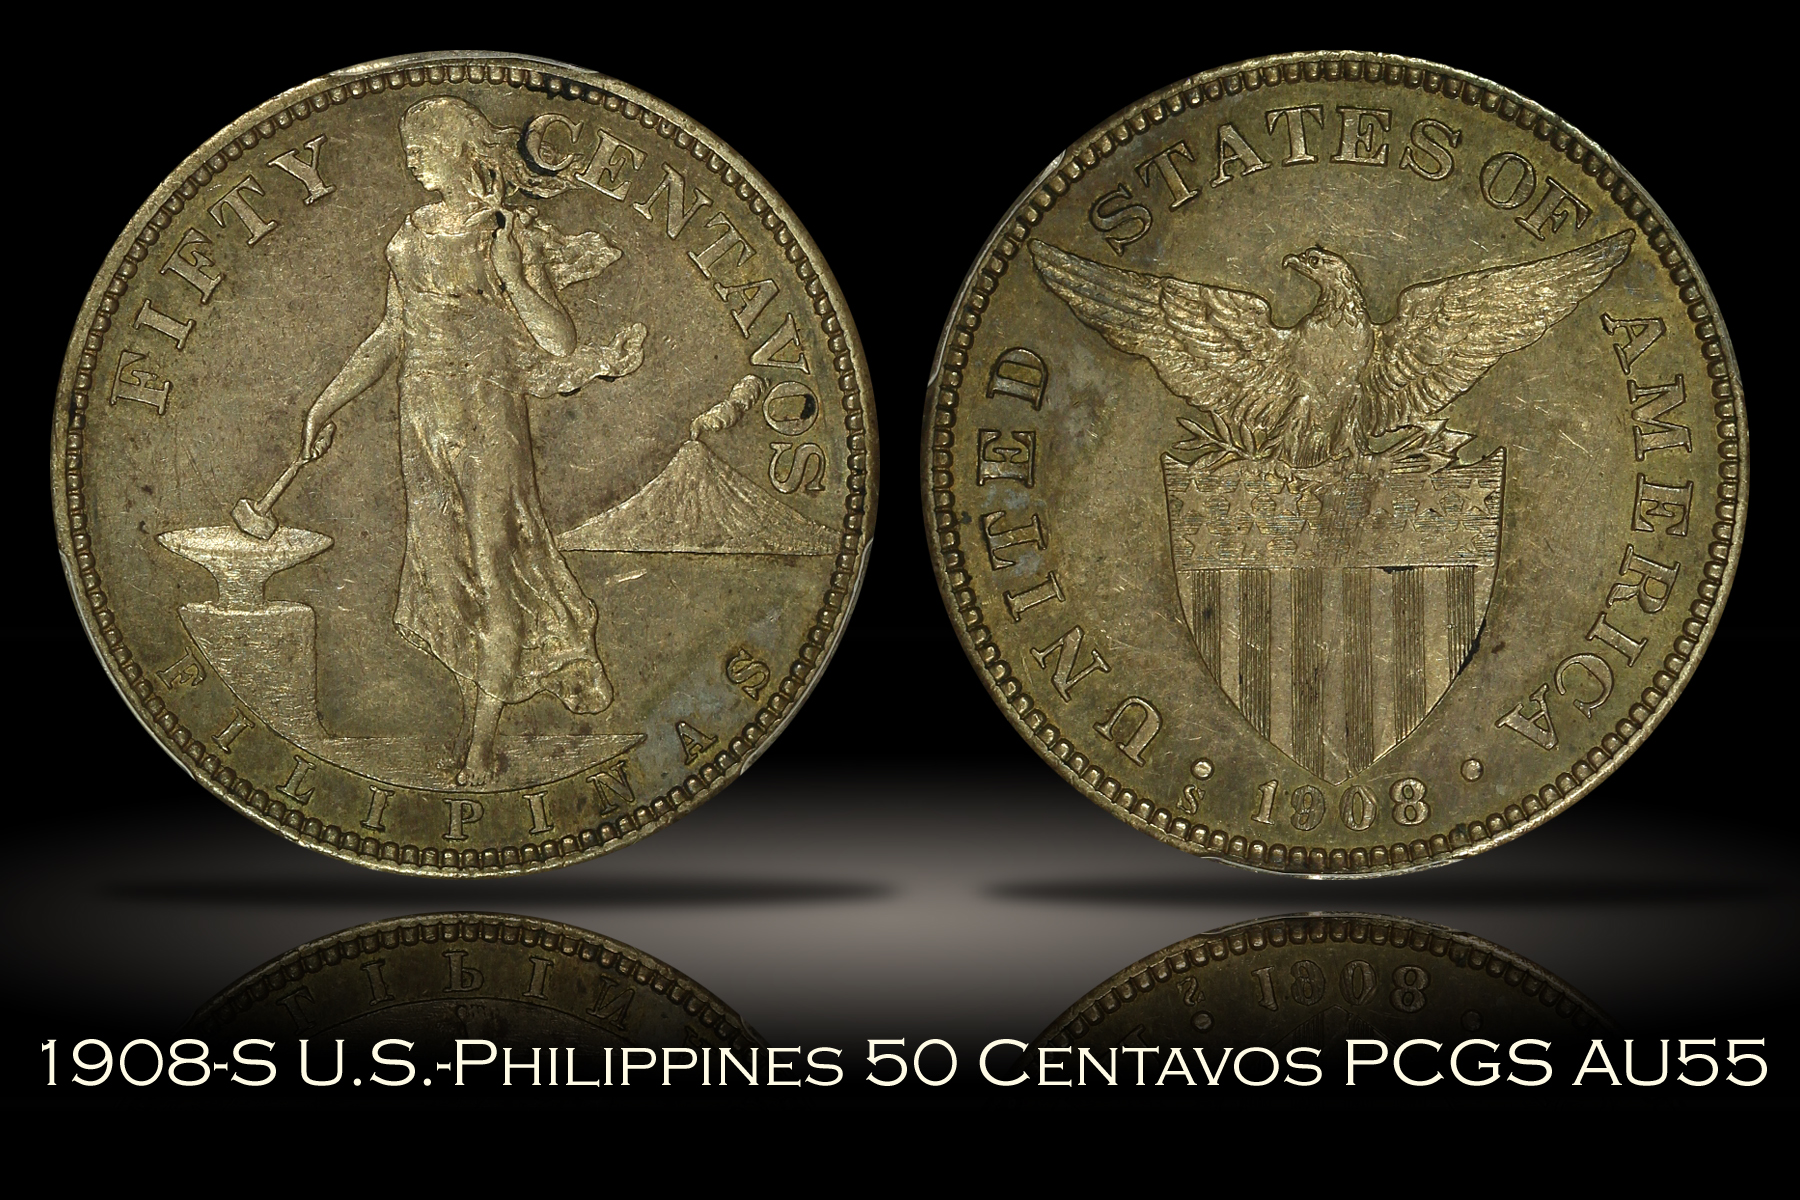 1908-S U.S.-Philippines 50 Centavos PCGS AU55